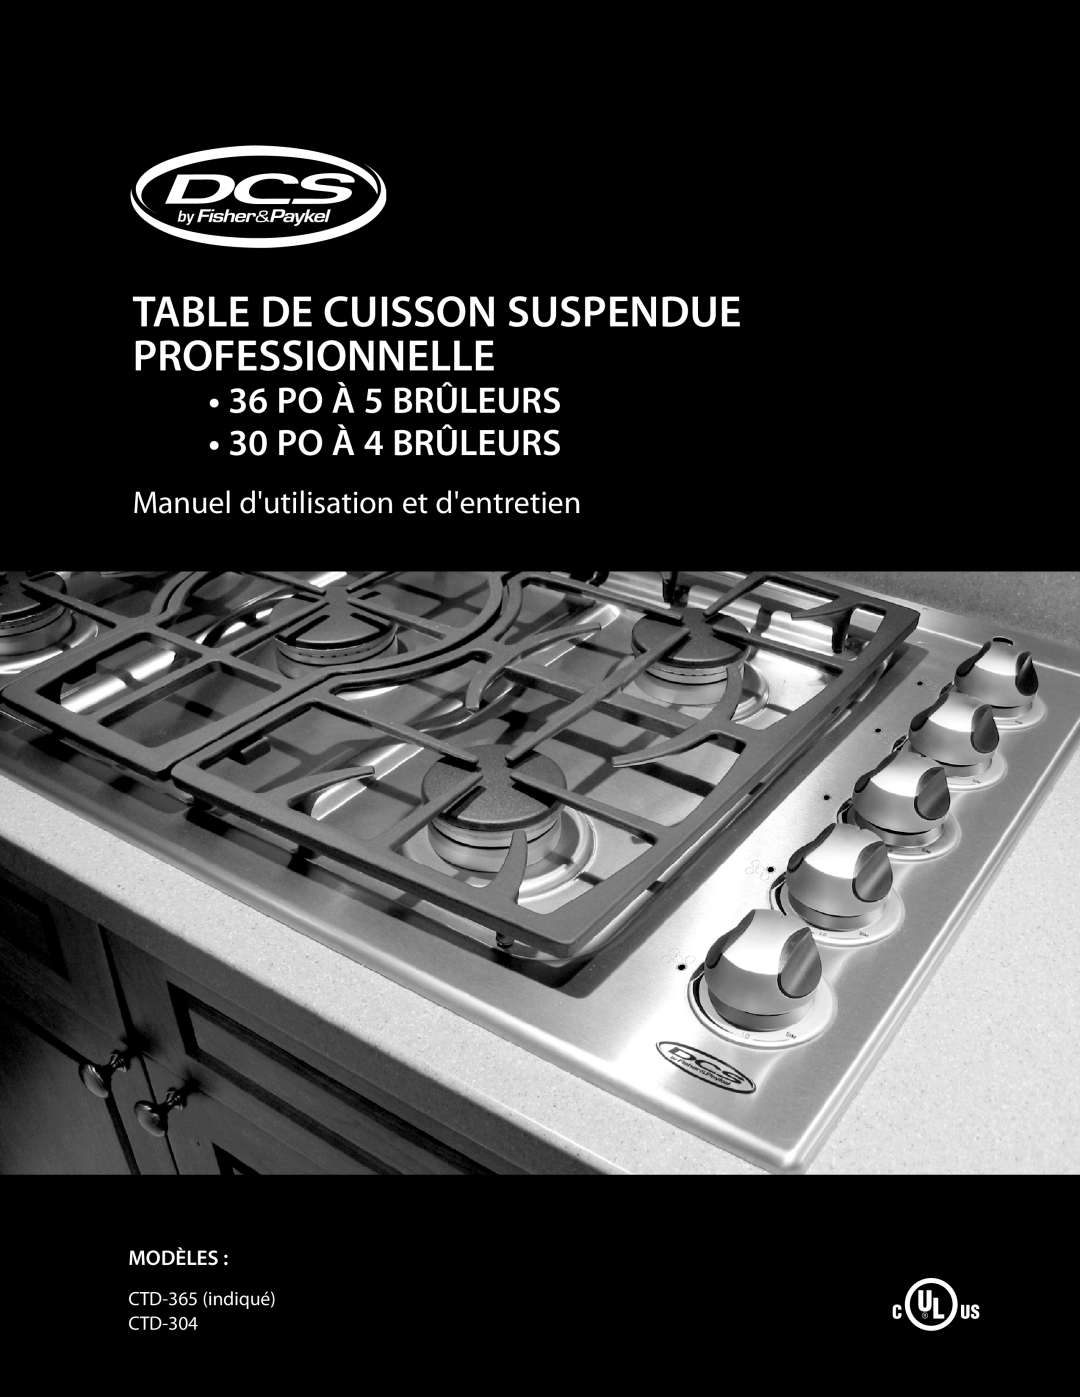 DCS CTD-304, CTD-365 manual TABLE DE CUISSON SUSPENDUE PROFESSIONNELLE 36 PO À 5 BRÛLEURS, 30 PO À 4 BRÛLEURS, Modèles 